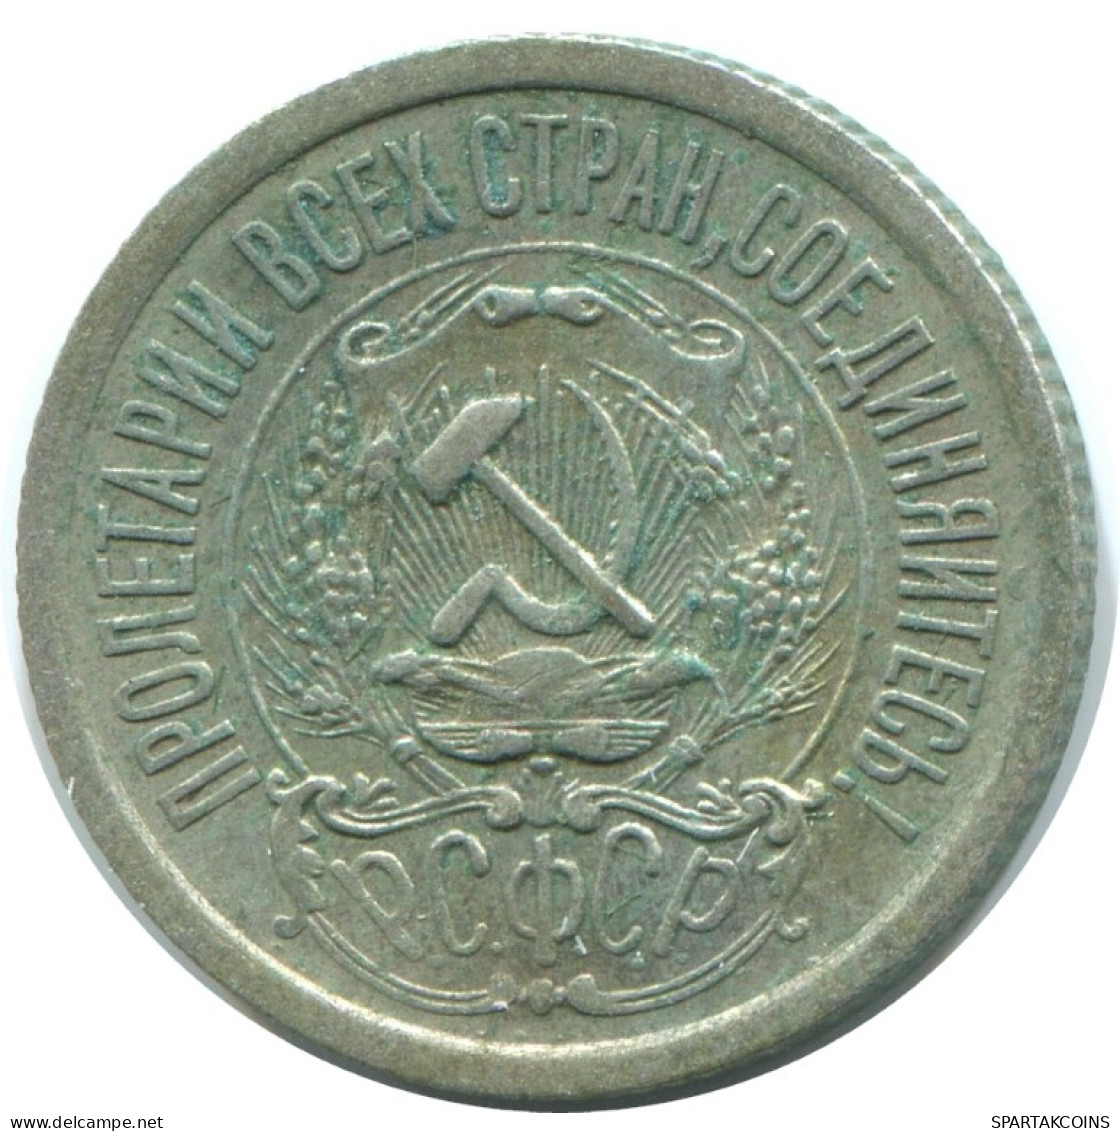 15 KOPEKS 1923 RUSSLAND RUSSIA RSFSR SILBER Münze HIGH GRADE #AF038.4.D.A - Russia